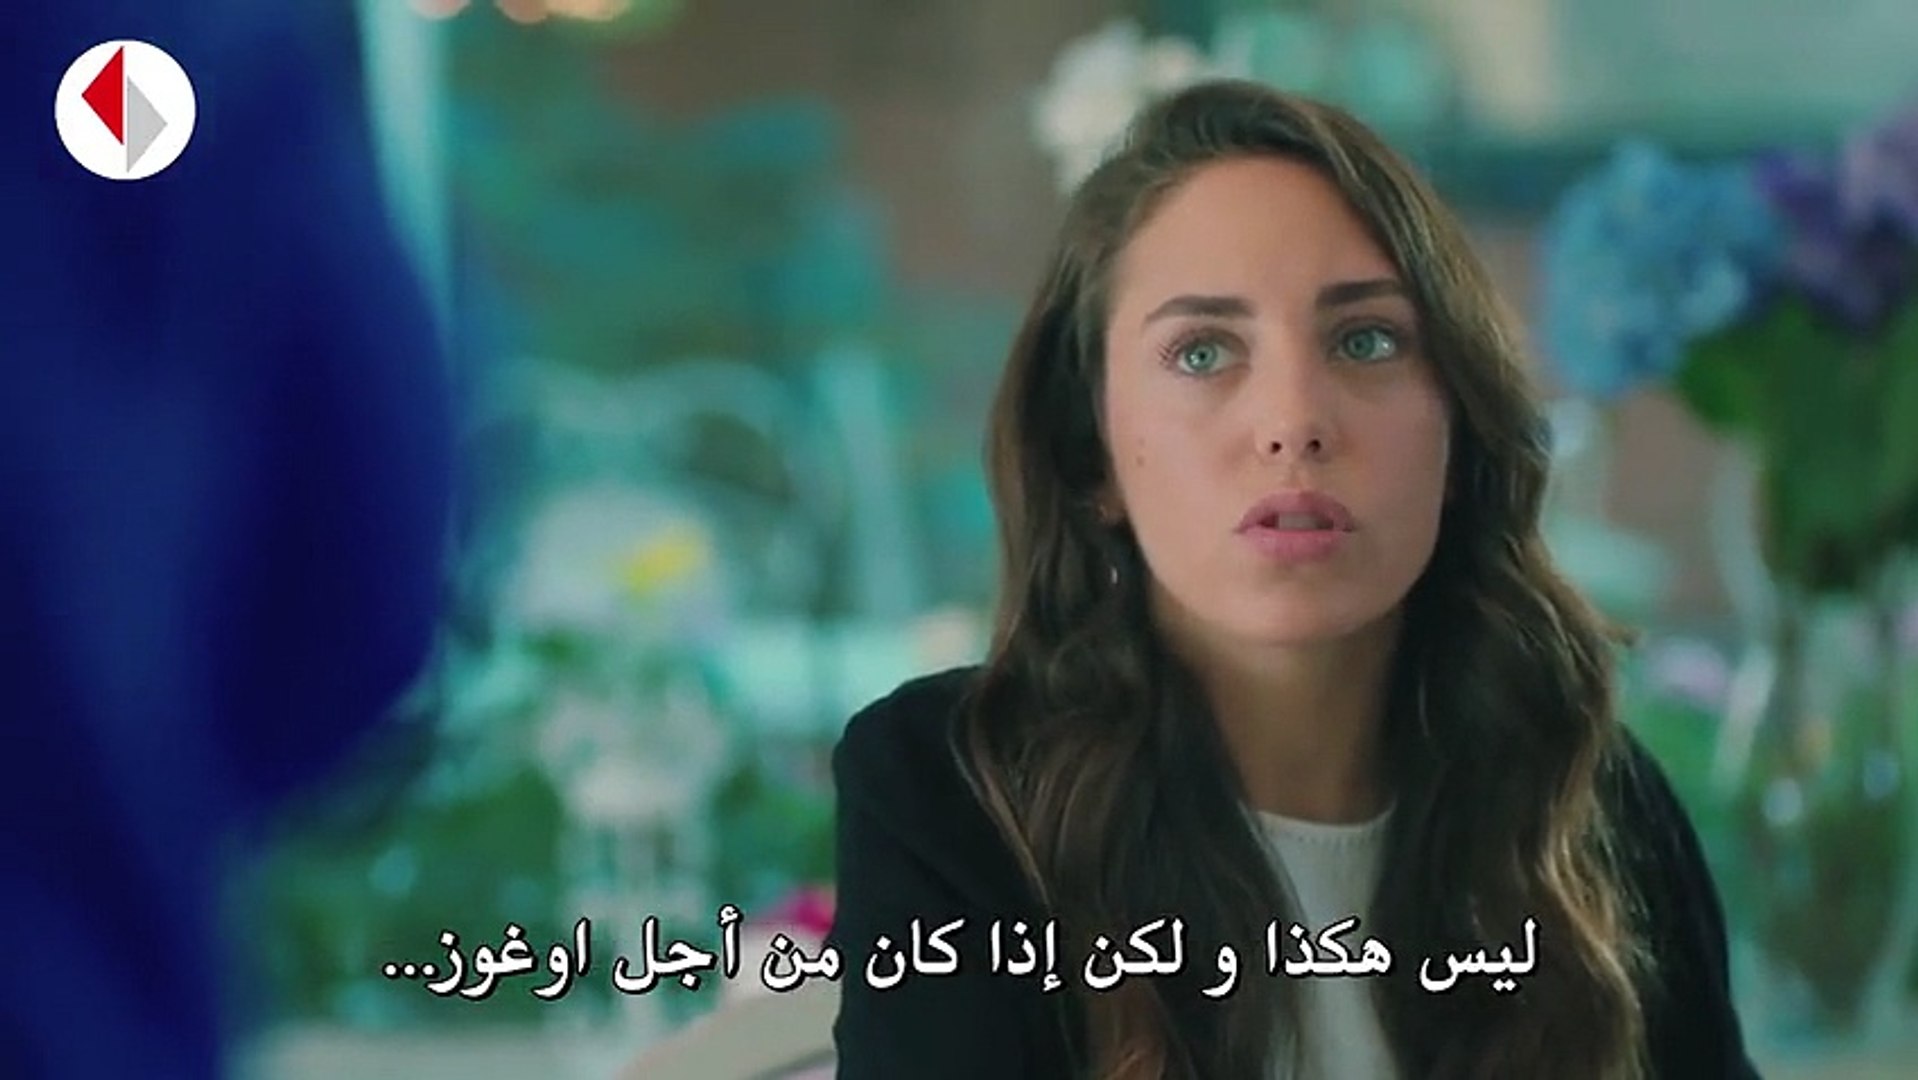 مسلسل نبضات قلب الحلقة 8 مترجمة للعربية القسم 2 فيديو Dailymotion